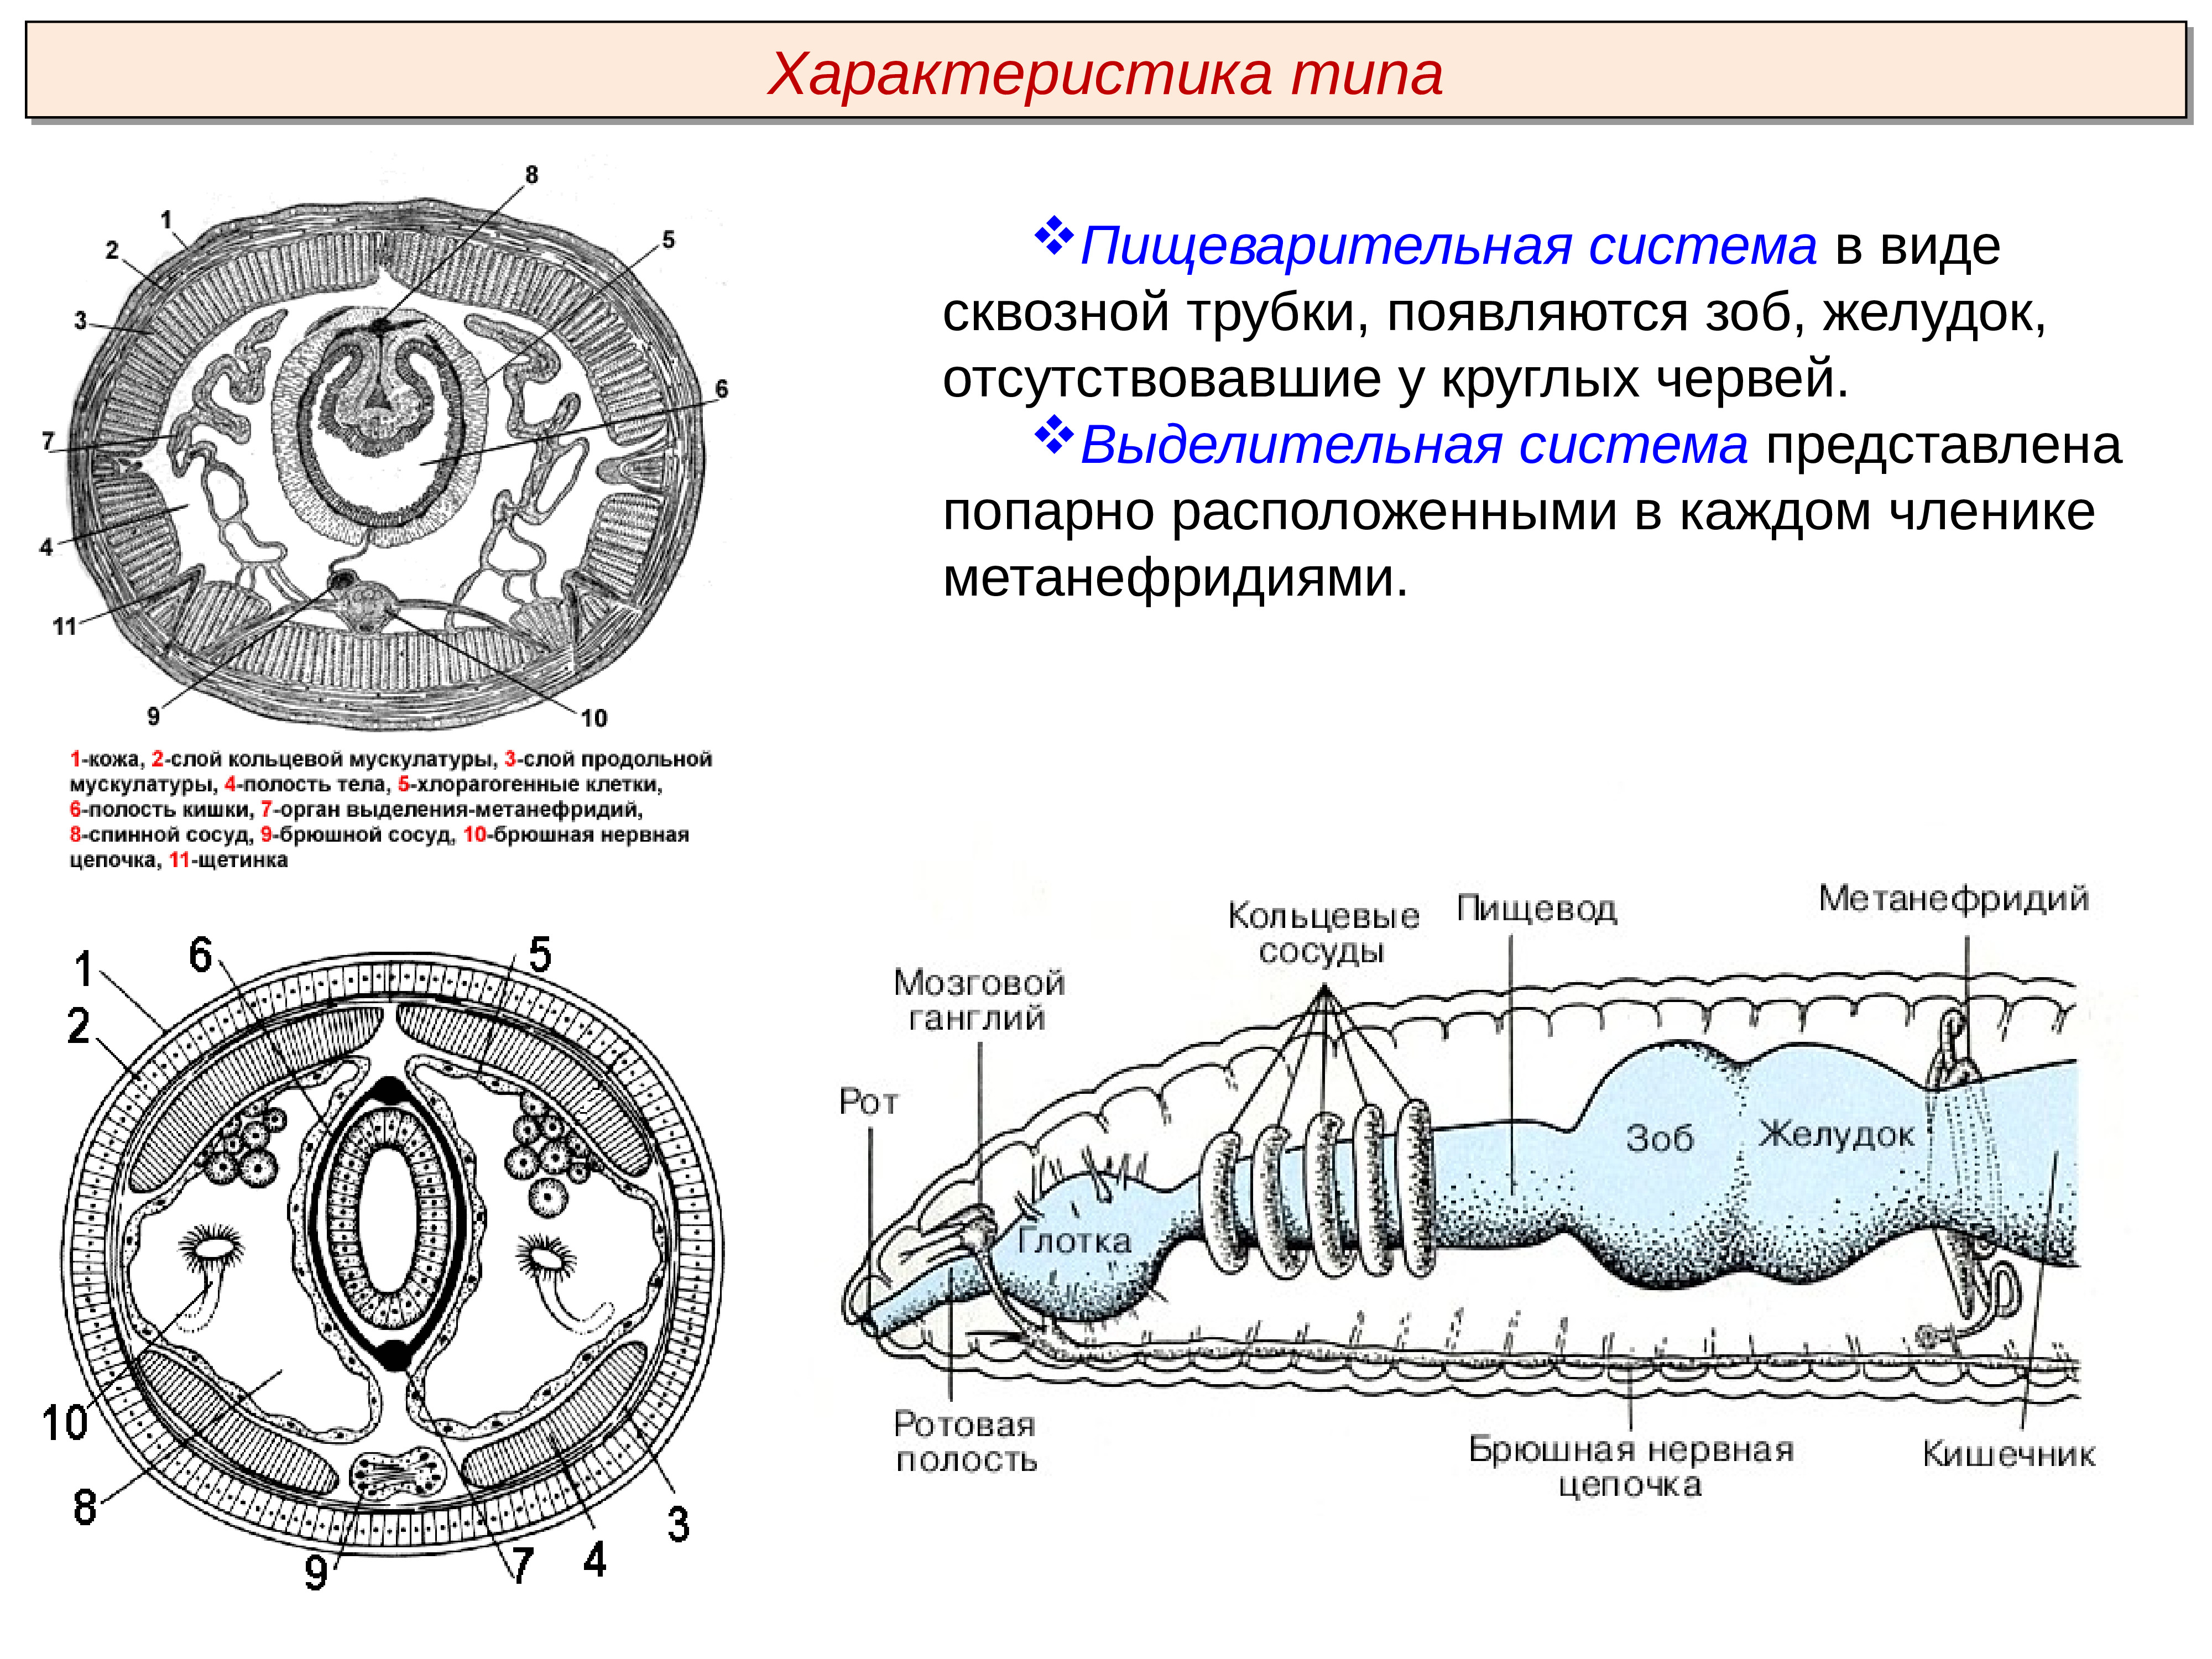 Органы выделительной системы червя. Тип кольчатые черви строение выделительной системы. Тип выделительной системы кольчатых червей. Органы выделительной системы кольчатых червей. Выделительная система кольчатых червей.